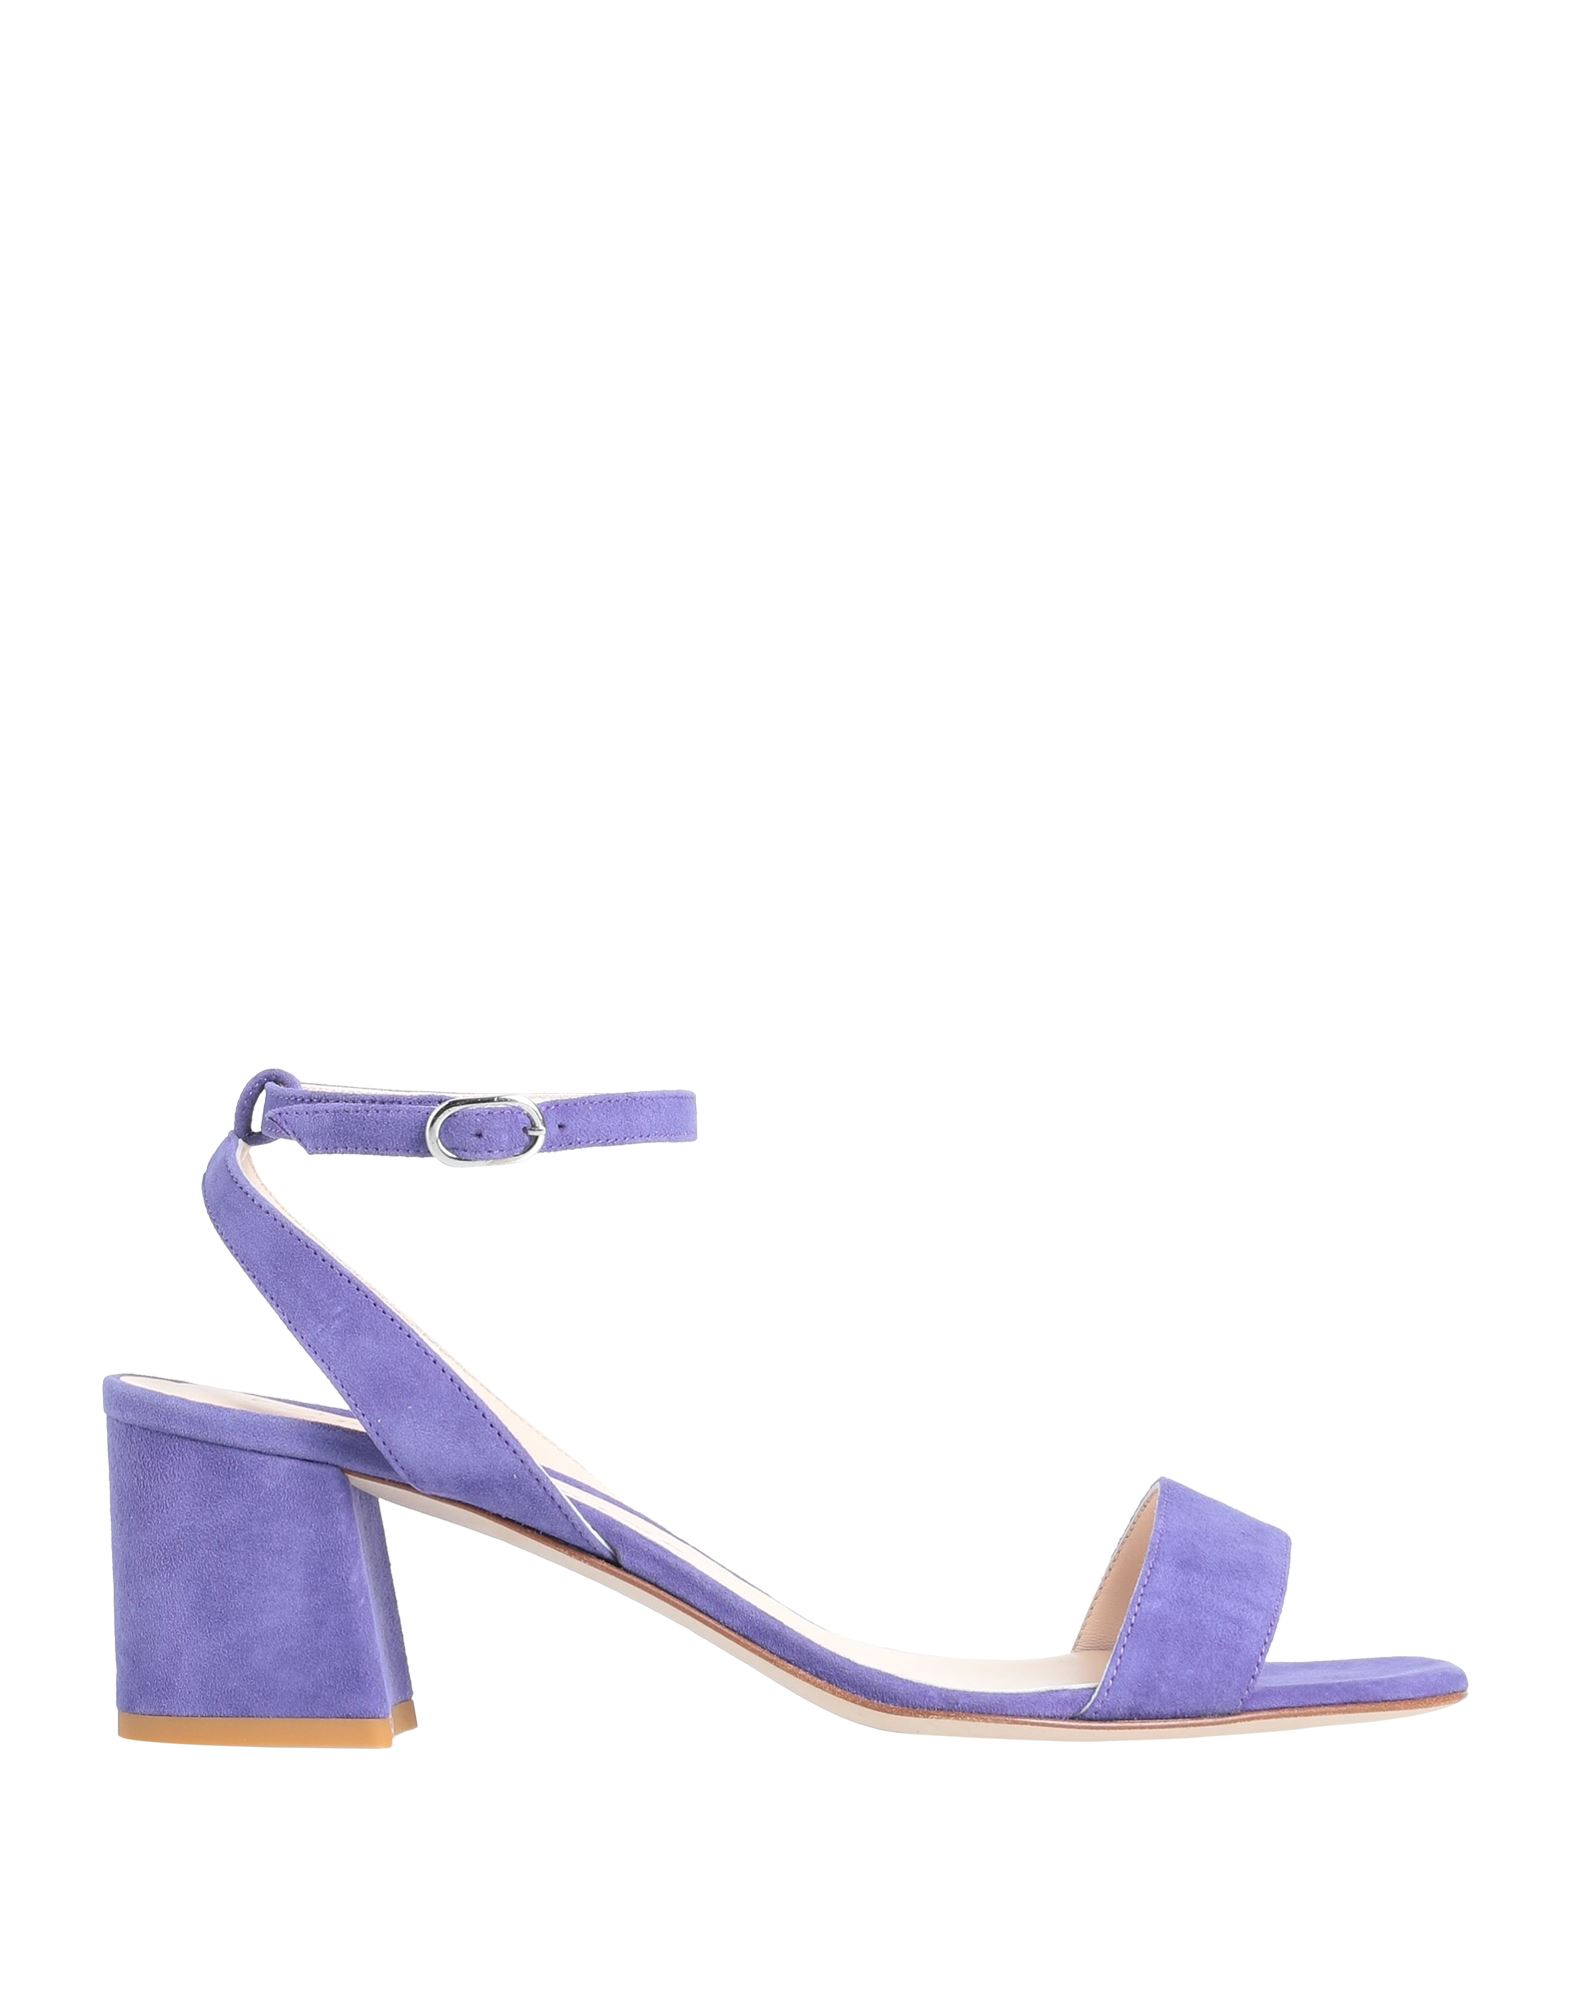 Prosperine ® Toe Strap Sandals In Light Purple